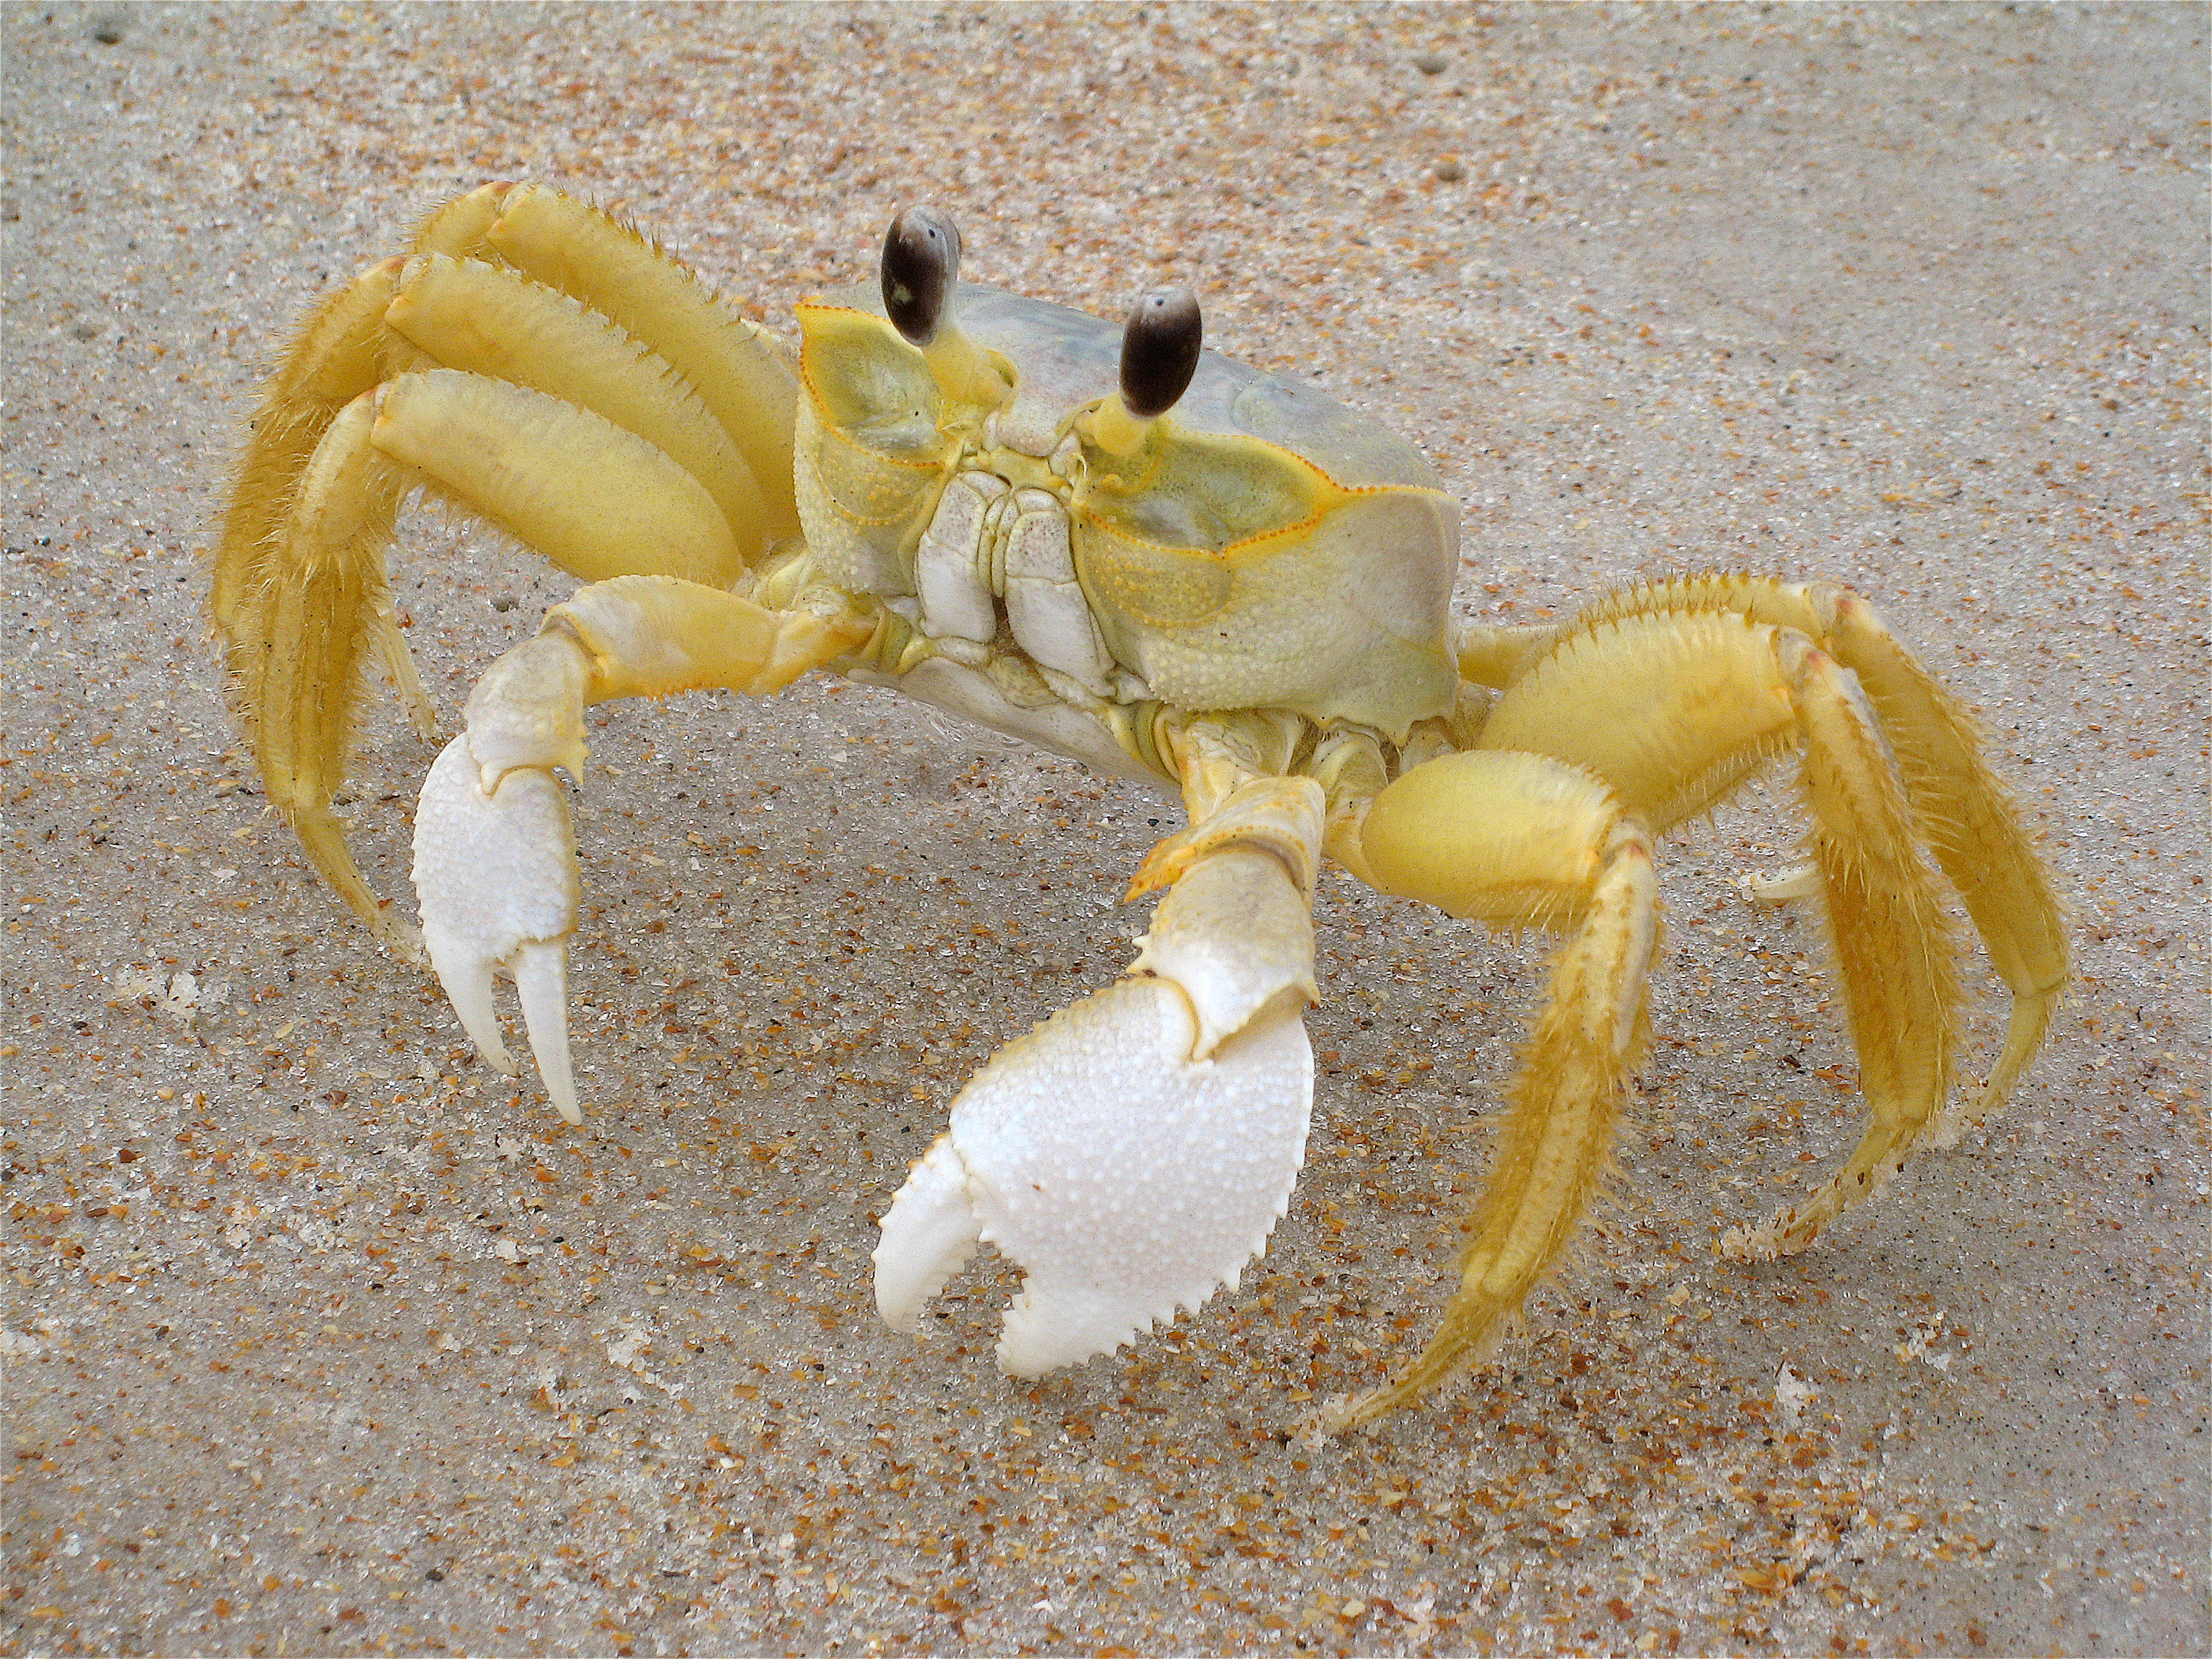 FloridaGhostCrab